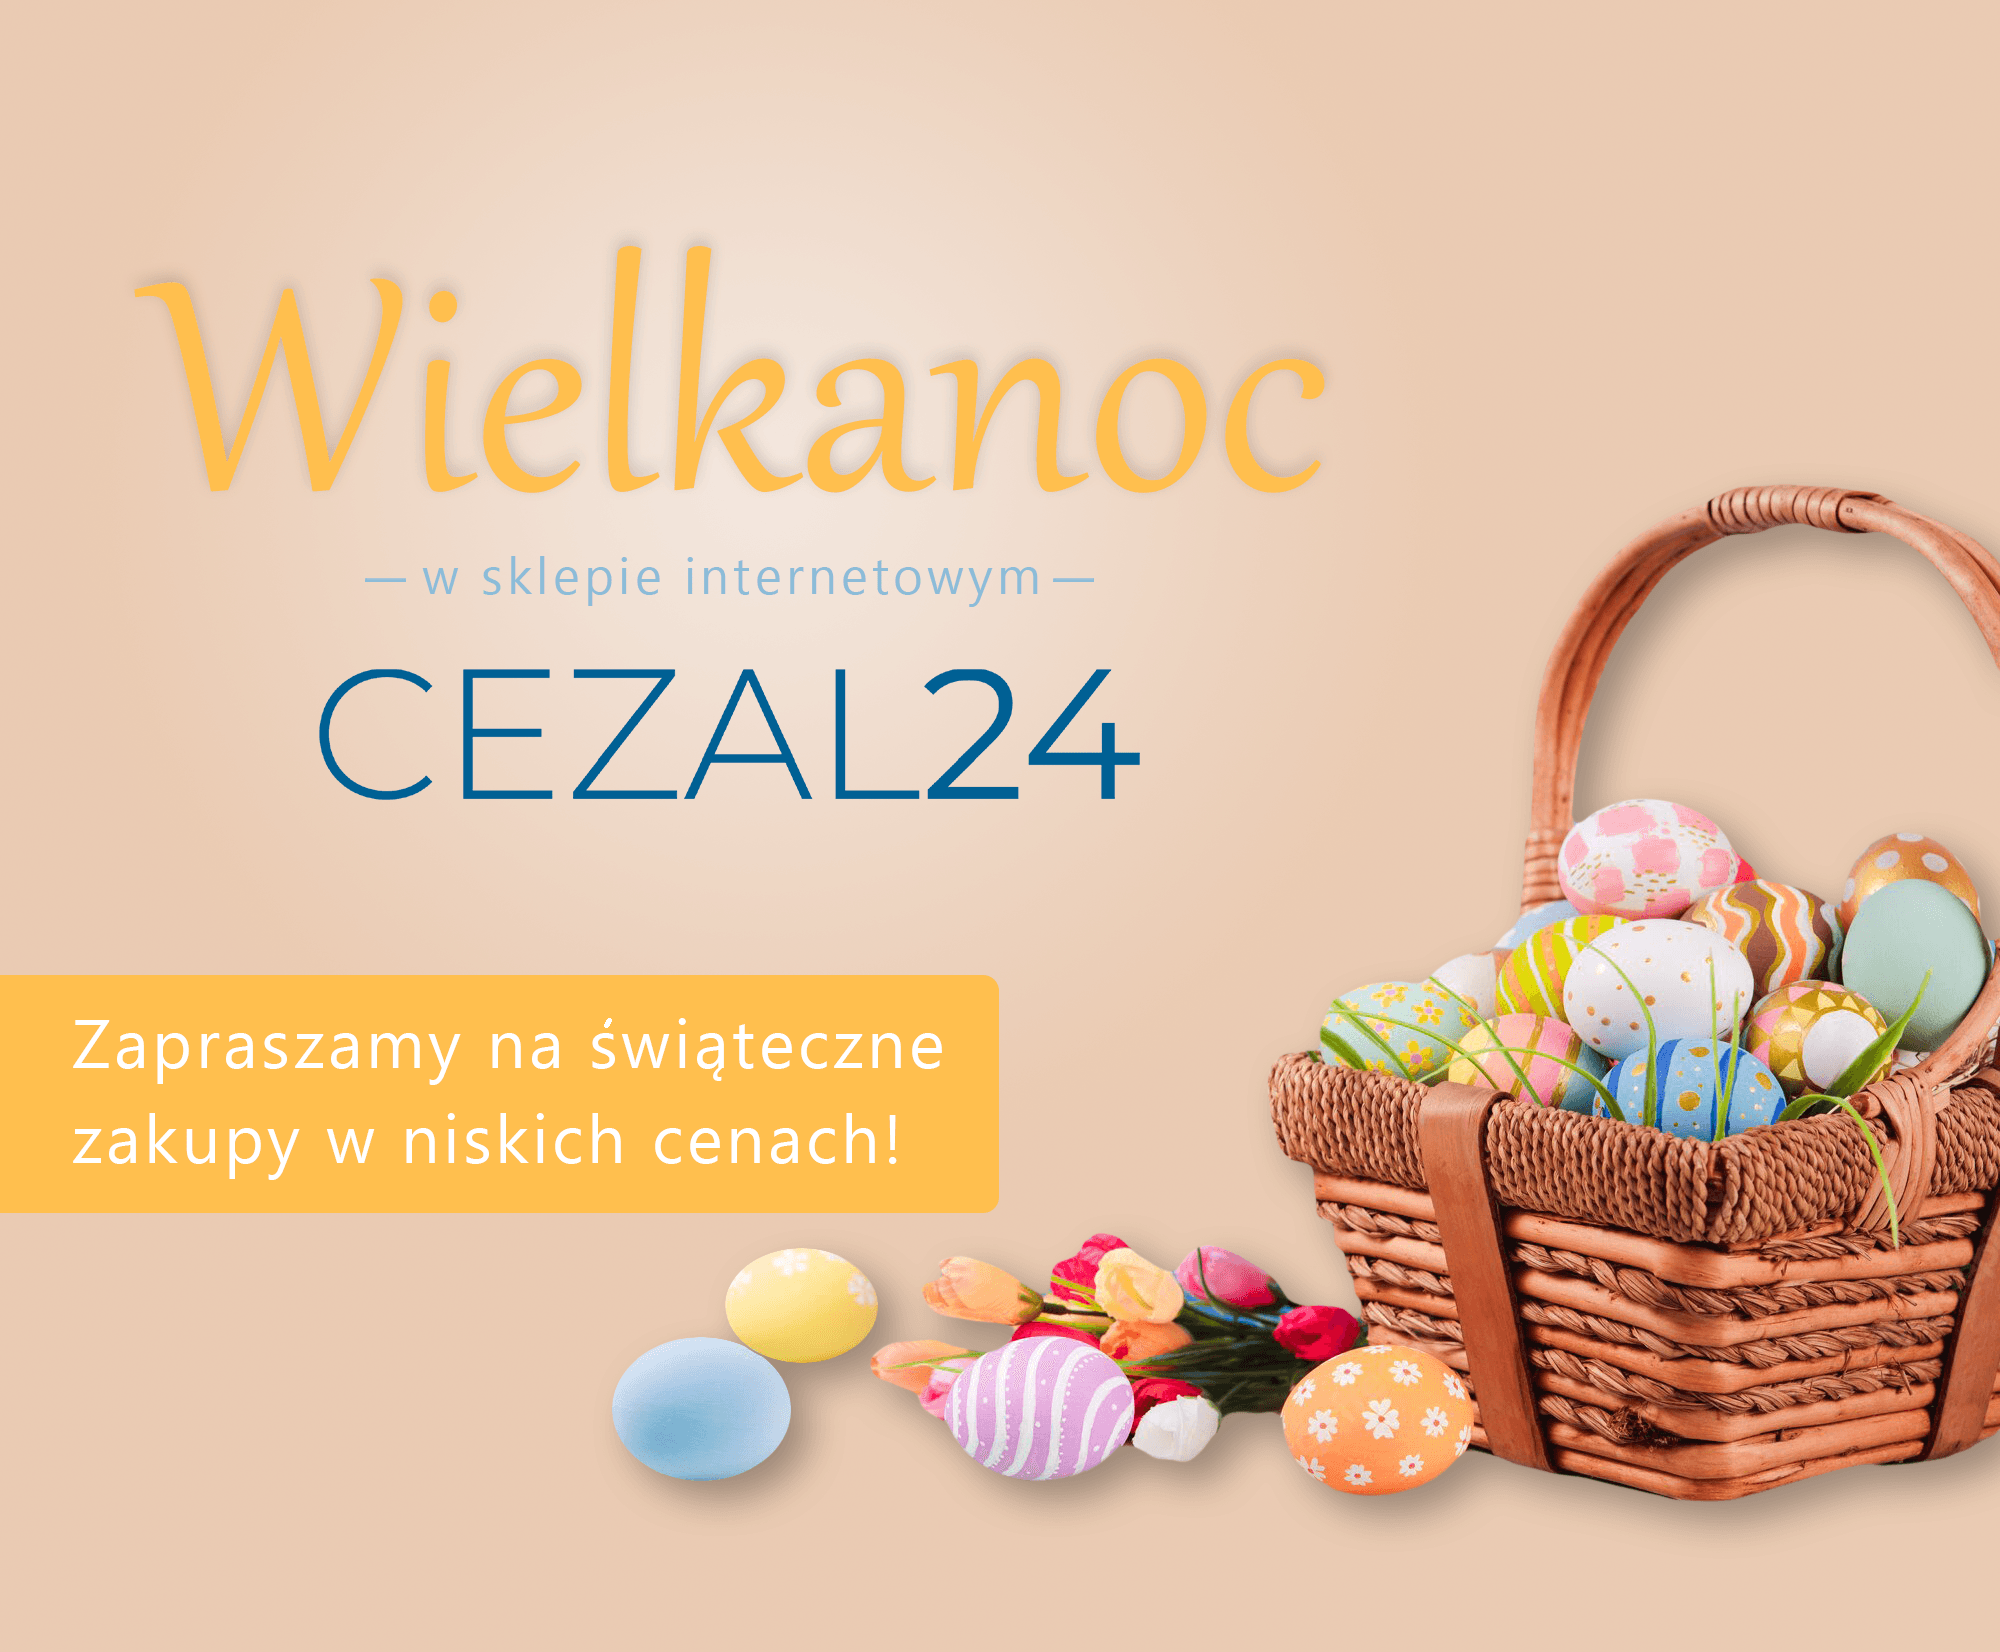 Promocje na Wielkanoc w Cezal24.pl